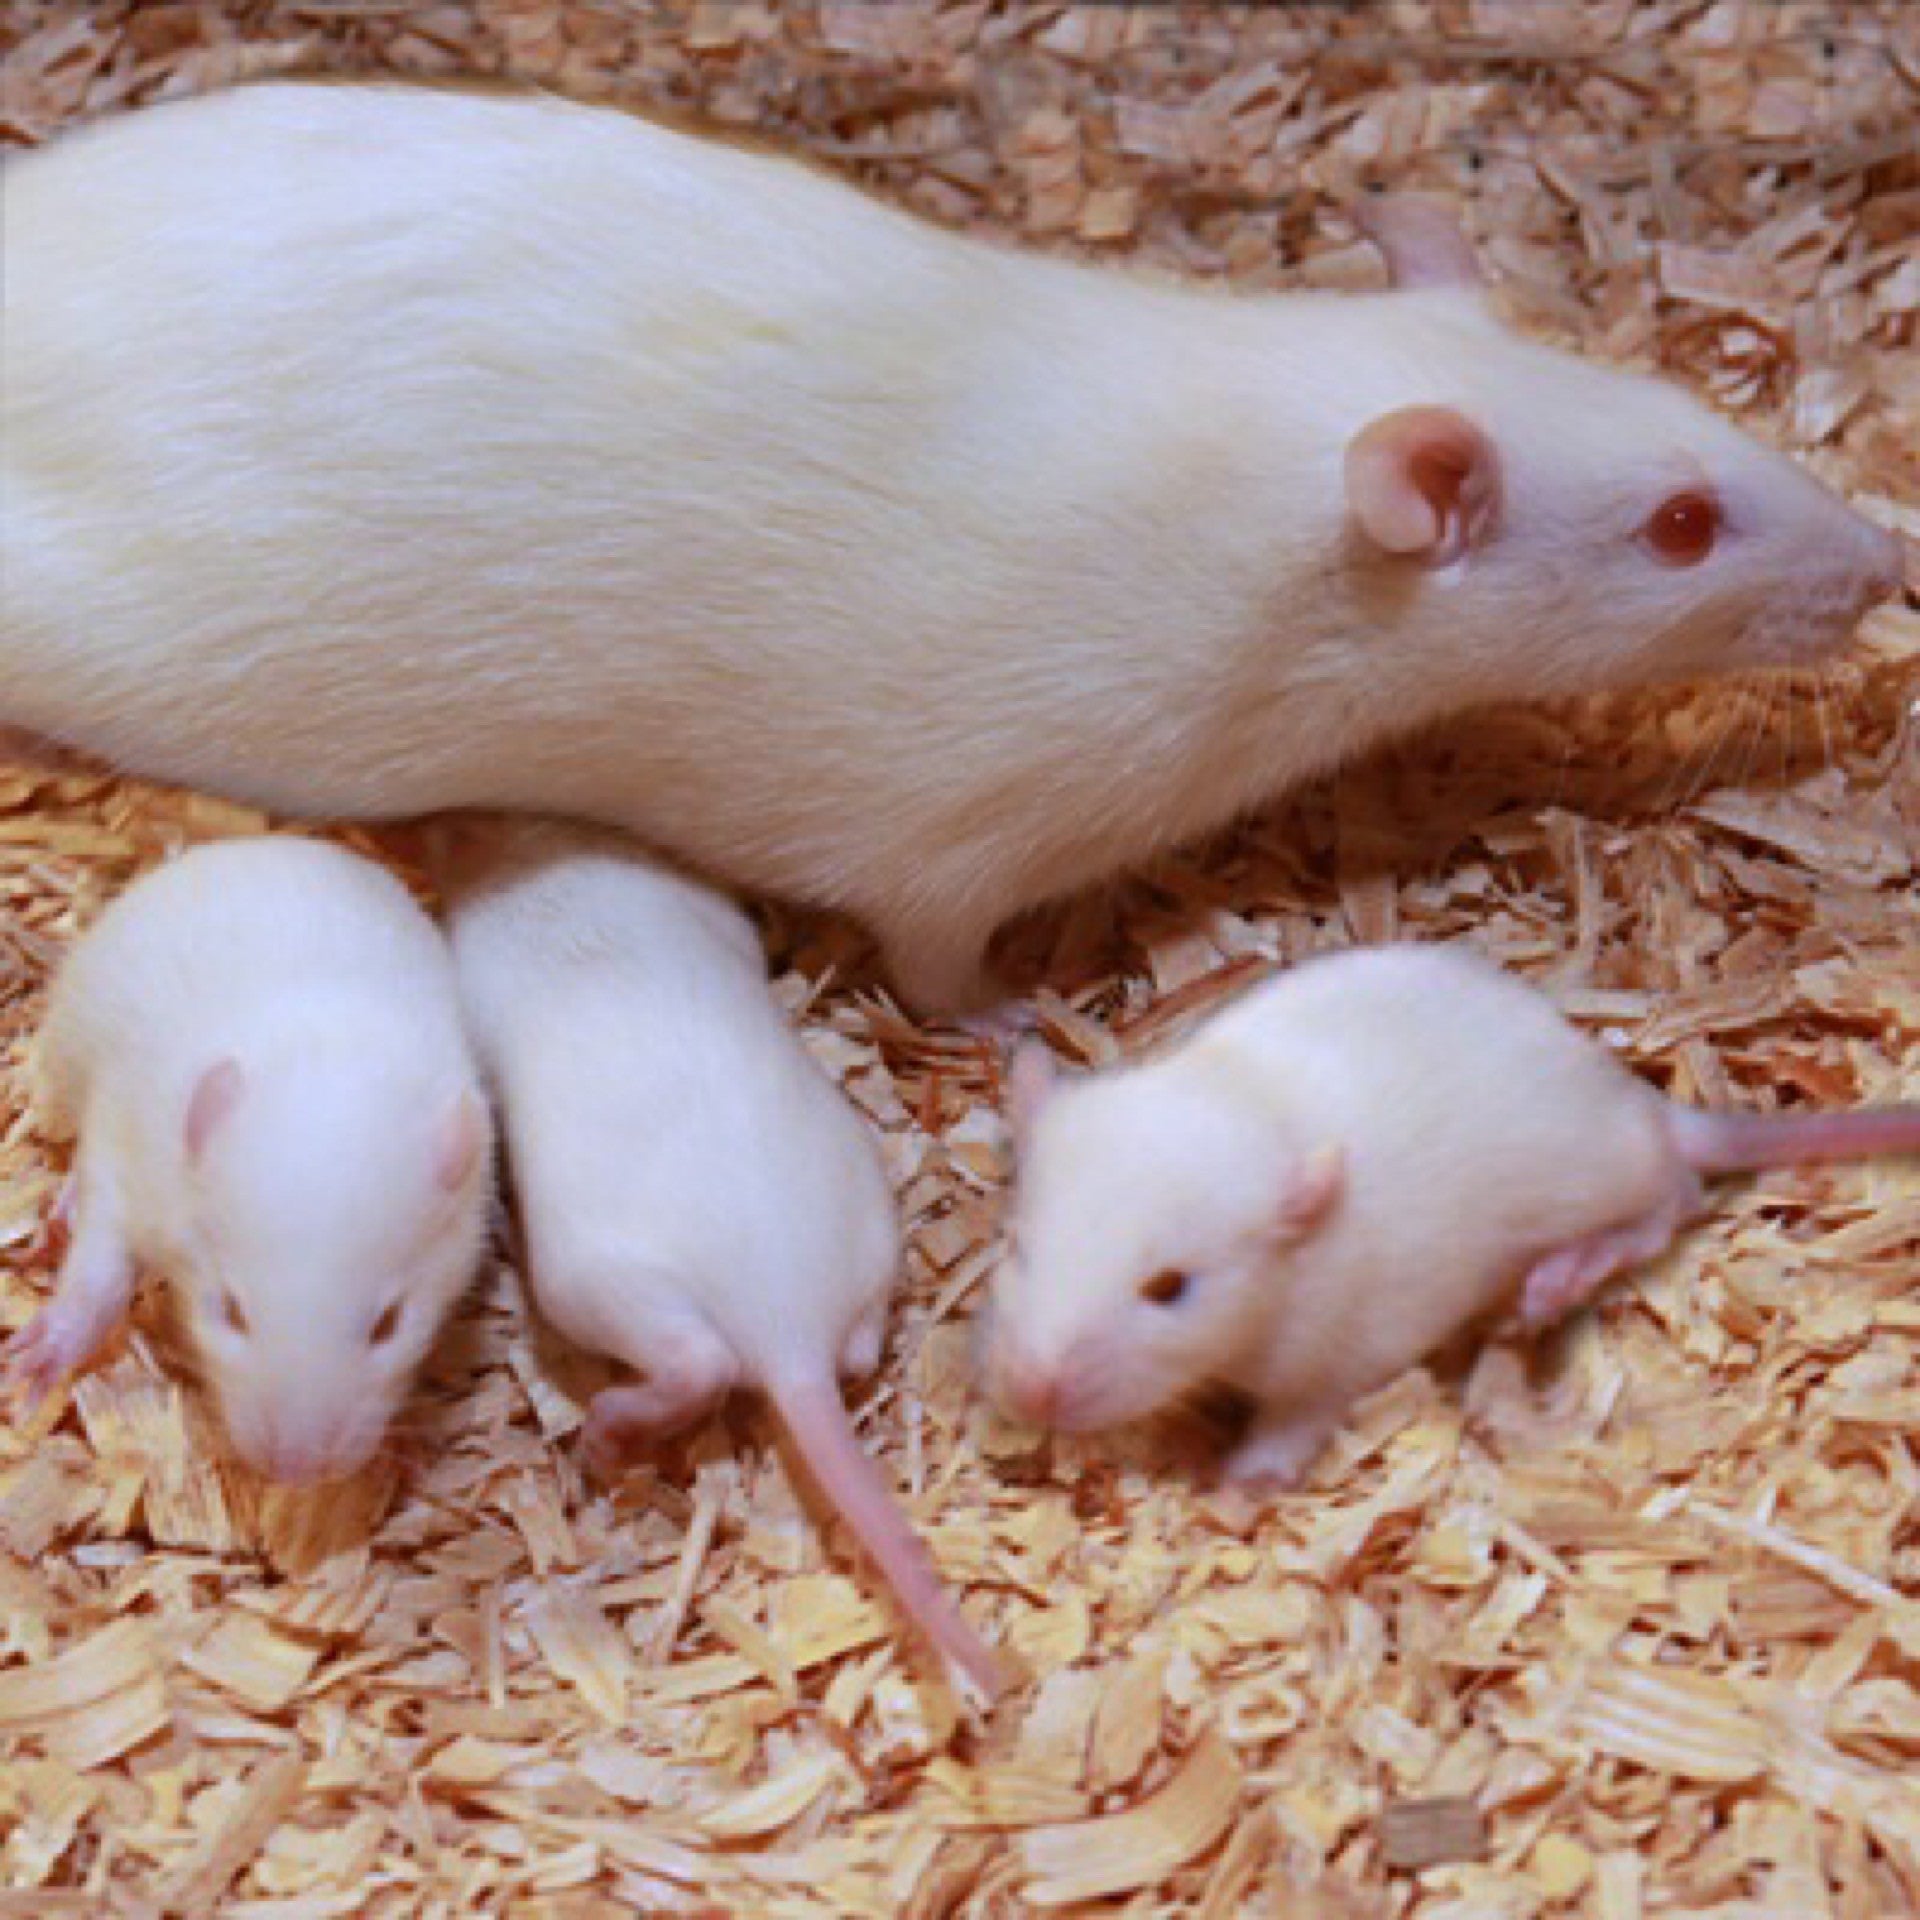 Live Rats-Live Rats